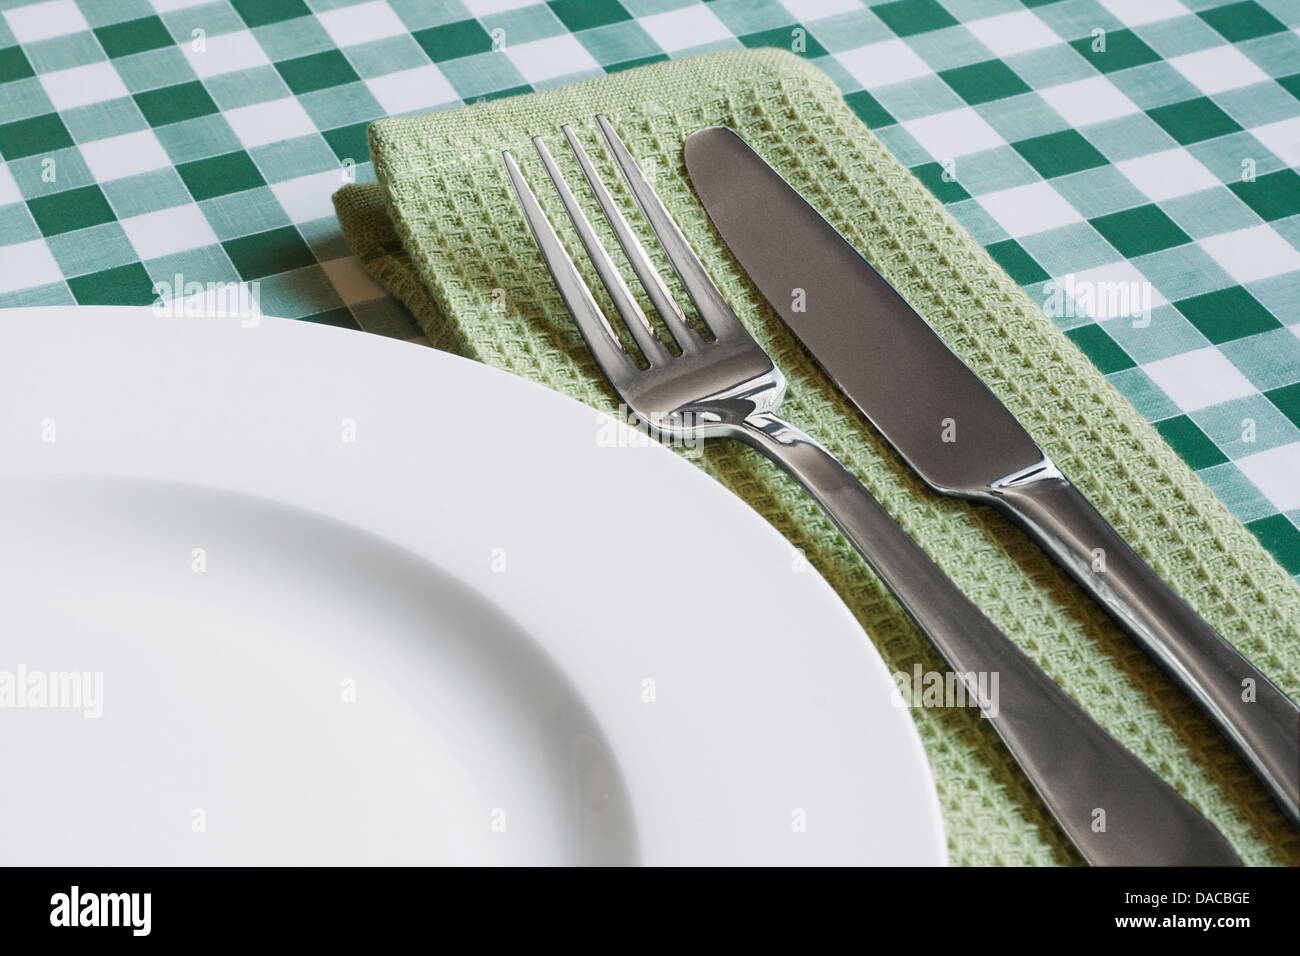 Place avec la plaque vide, couteau et fourchette sur un fond vichy vert symbole populaire pour diners et cafés Banque D'Images